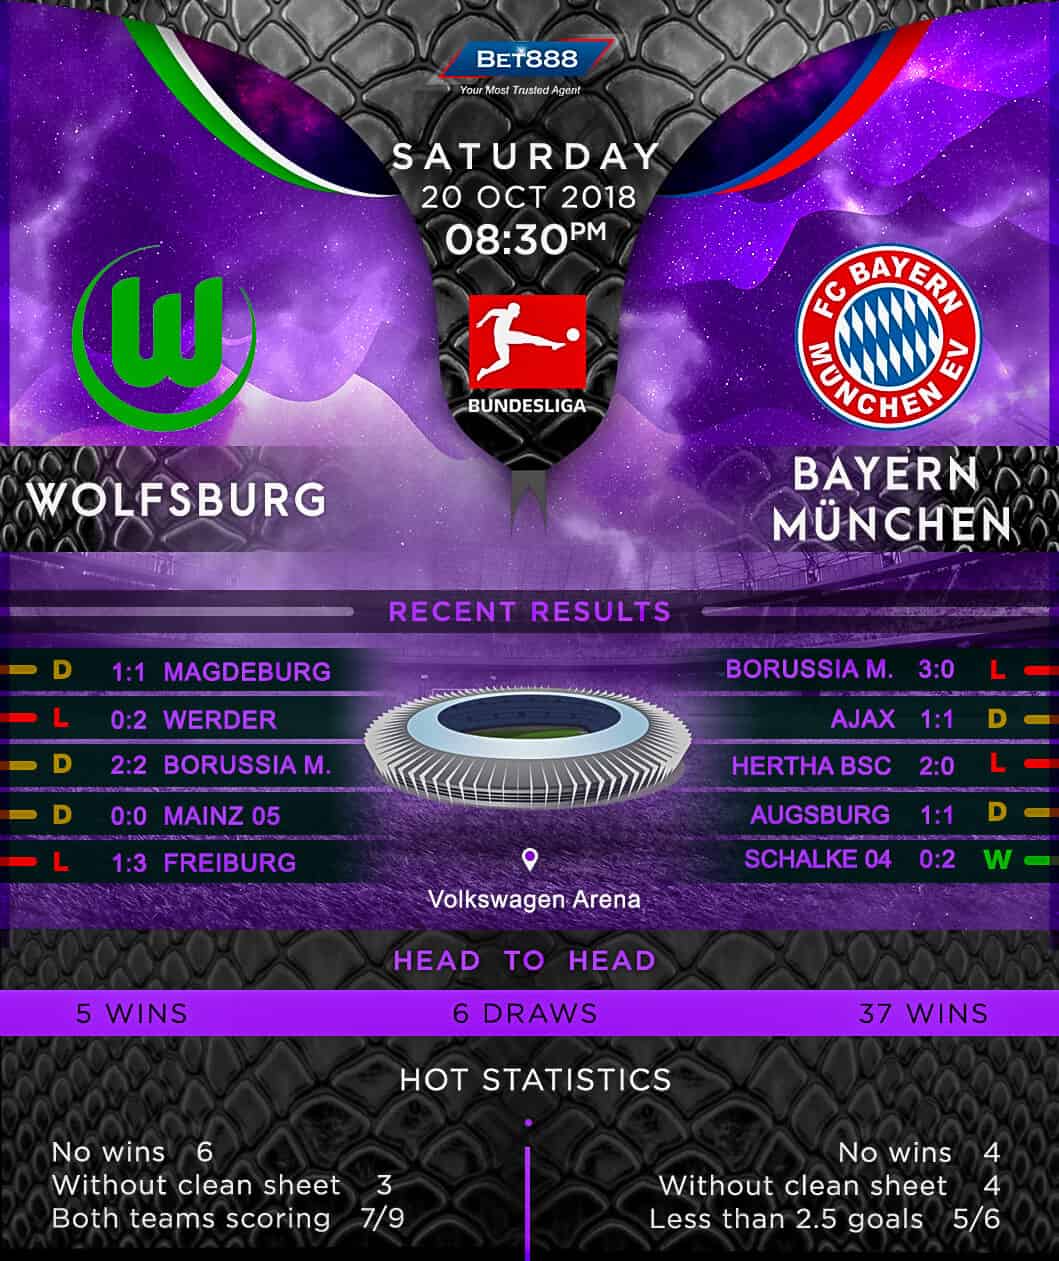 Wolfsburg vs Bayern Munich 20/10/18